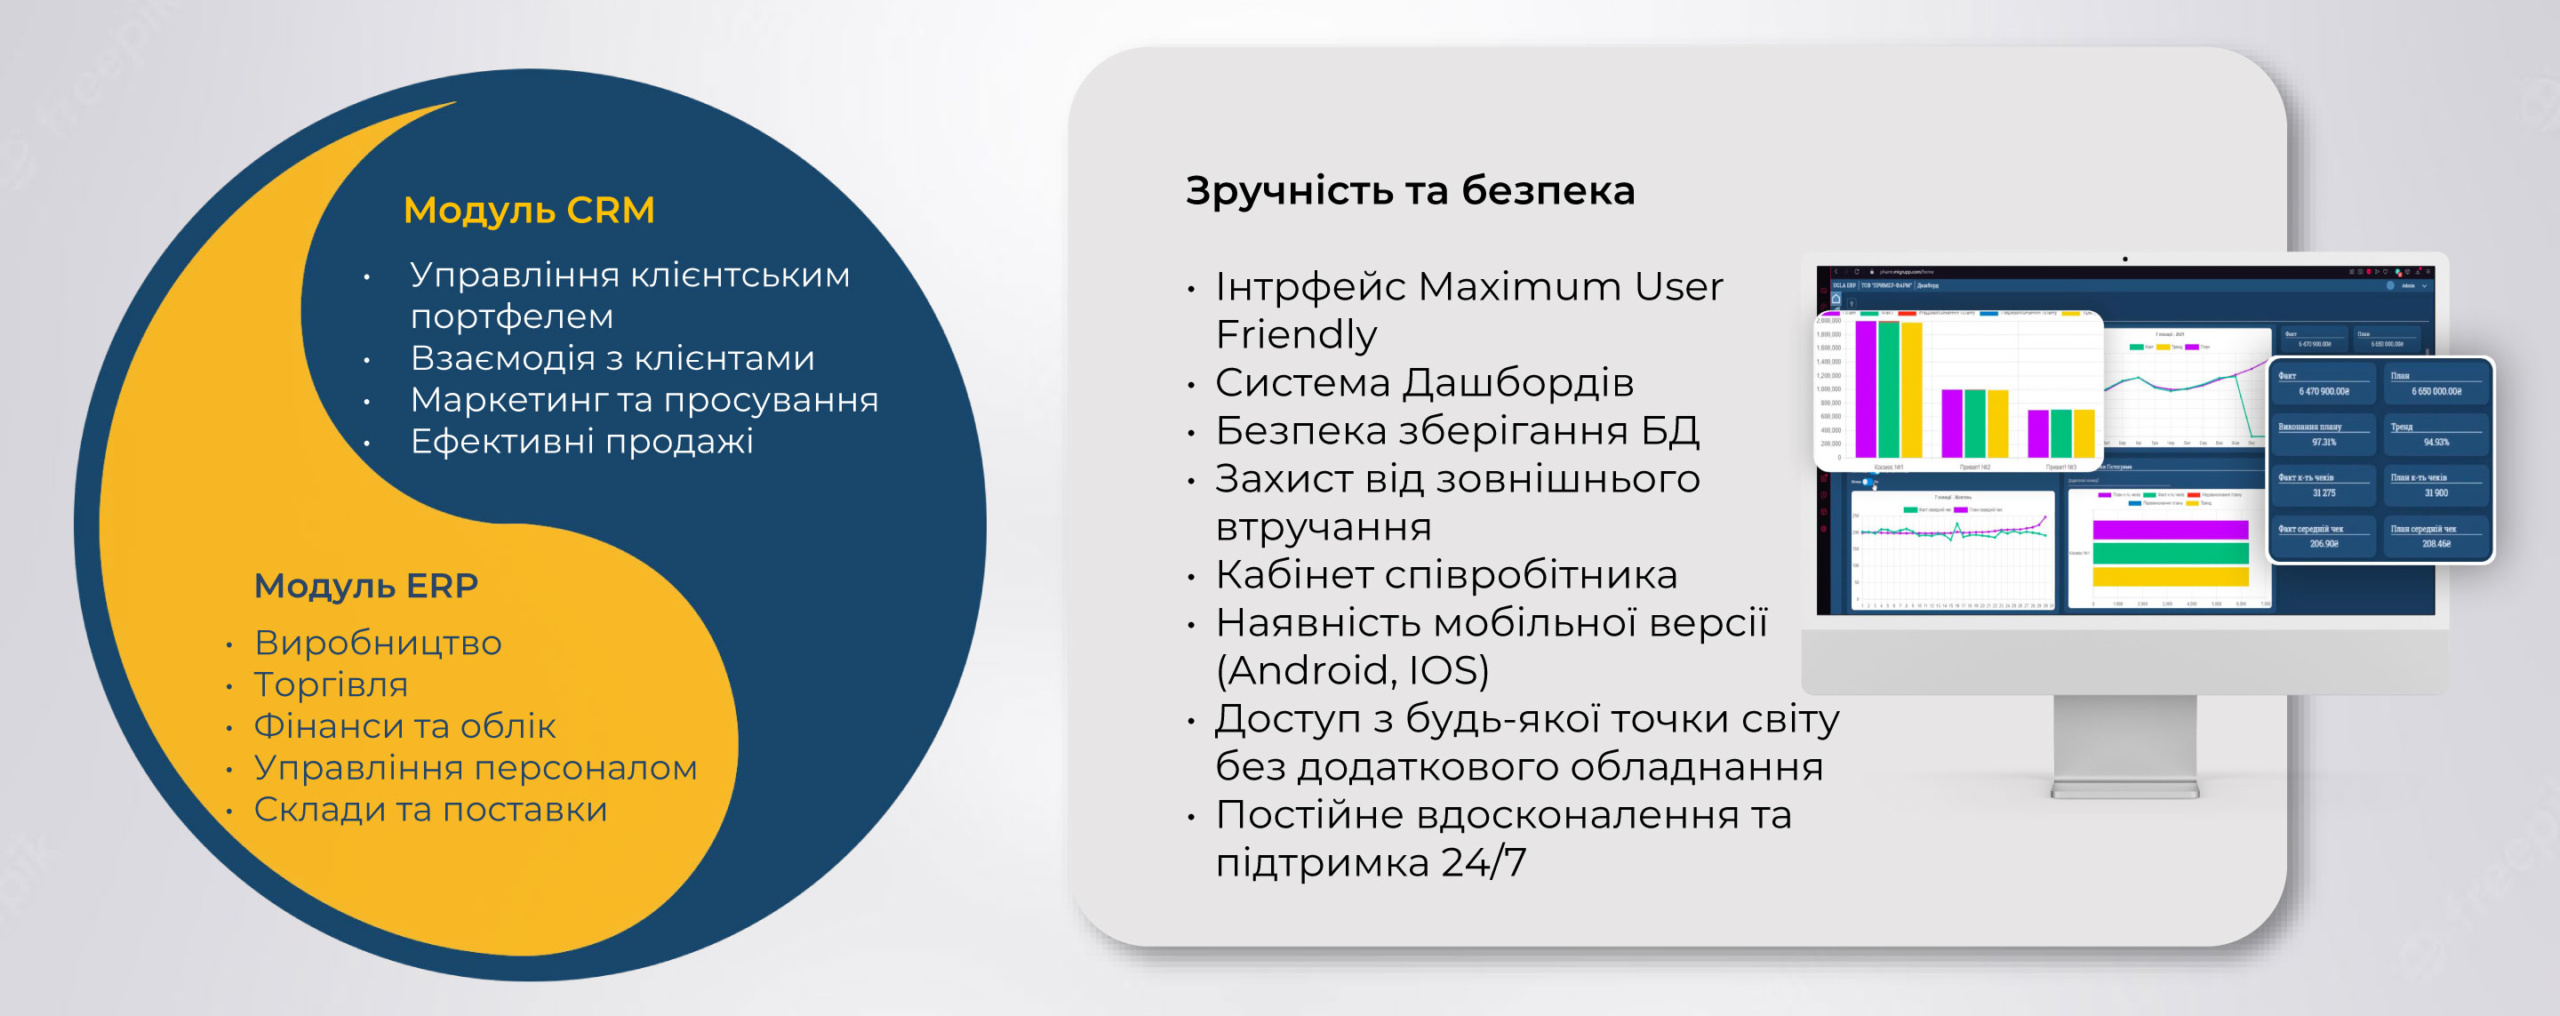 Украинская система UGLA для управления компанией: удобный интерфейс, искусственный интеллект и бесплатный период